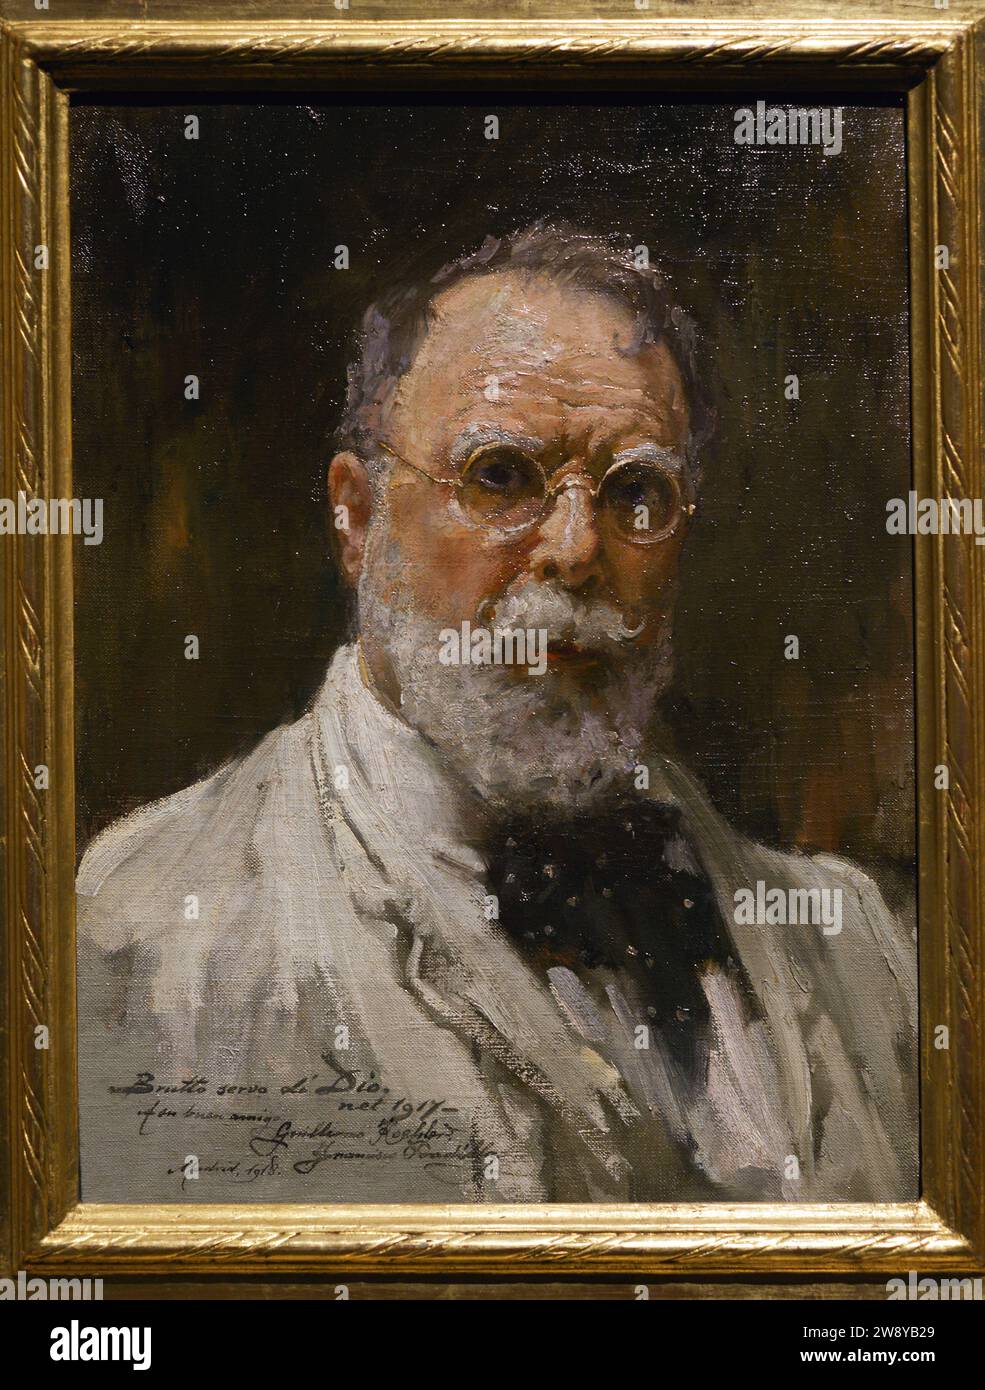 Francisco Pradilla Ortiz (1848-1921) Peintre espagnol. Autoportrait, 1917. Huile sur toile, 46,8 x 35,5 cm. Musée du Prado. Madrid. Espagne. Banque D'Images